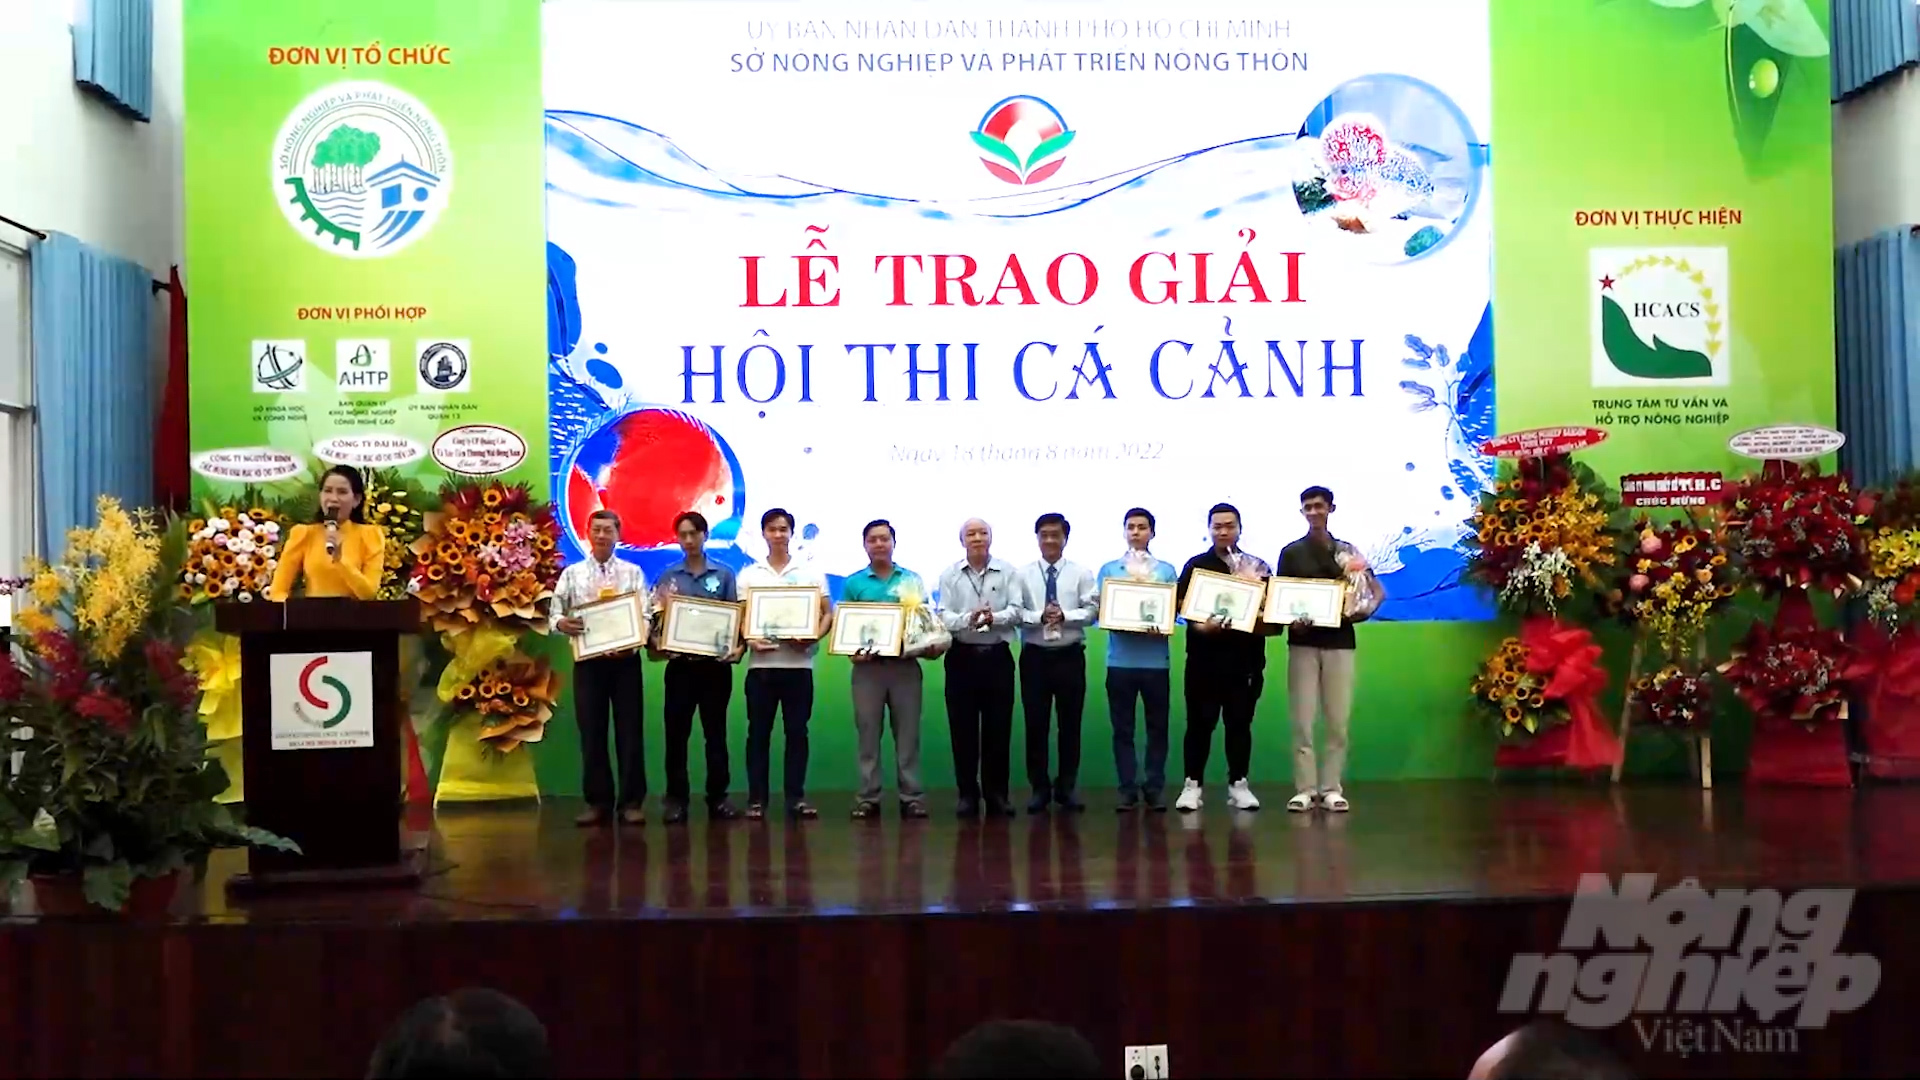  Lãnh đạo TP.HCM trao kỷ niệm chương và tiến hành trao giải cho các cá nhân tại hội thi cá cảnh. Ảnh: Minh Sáng.